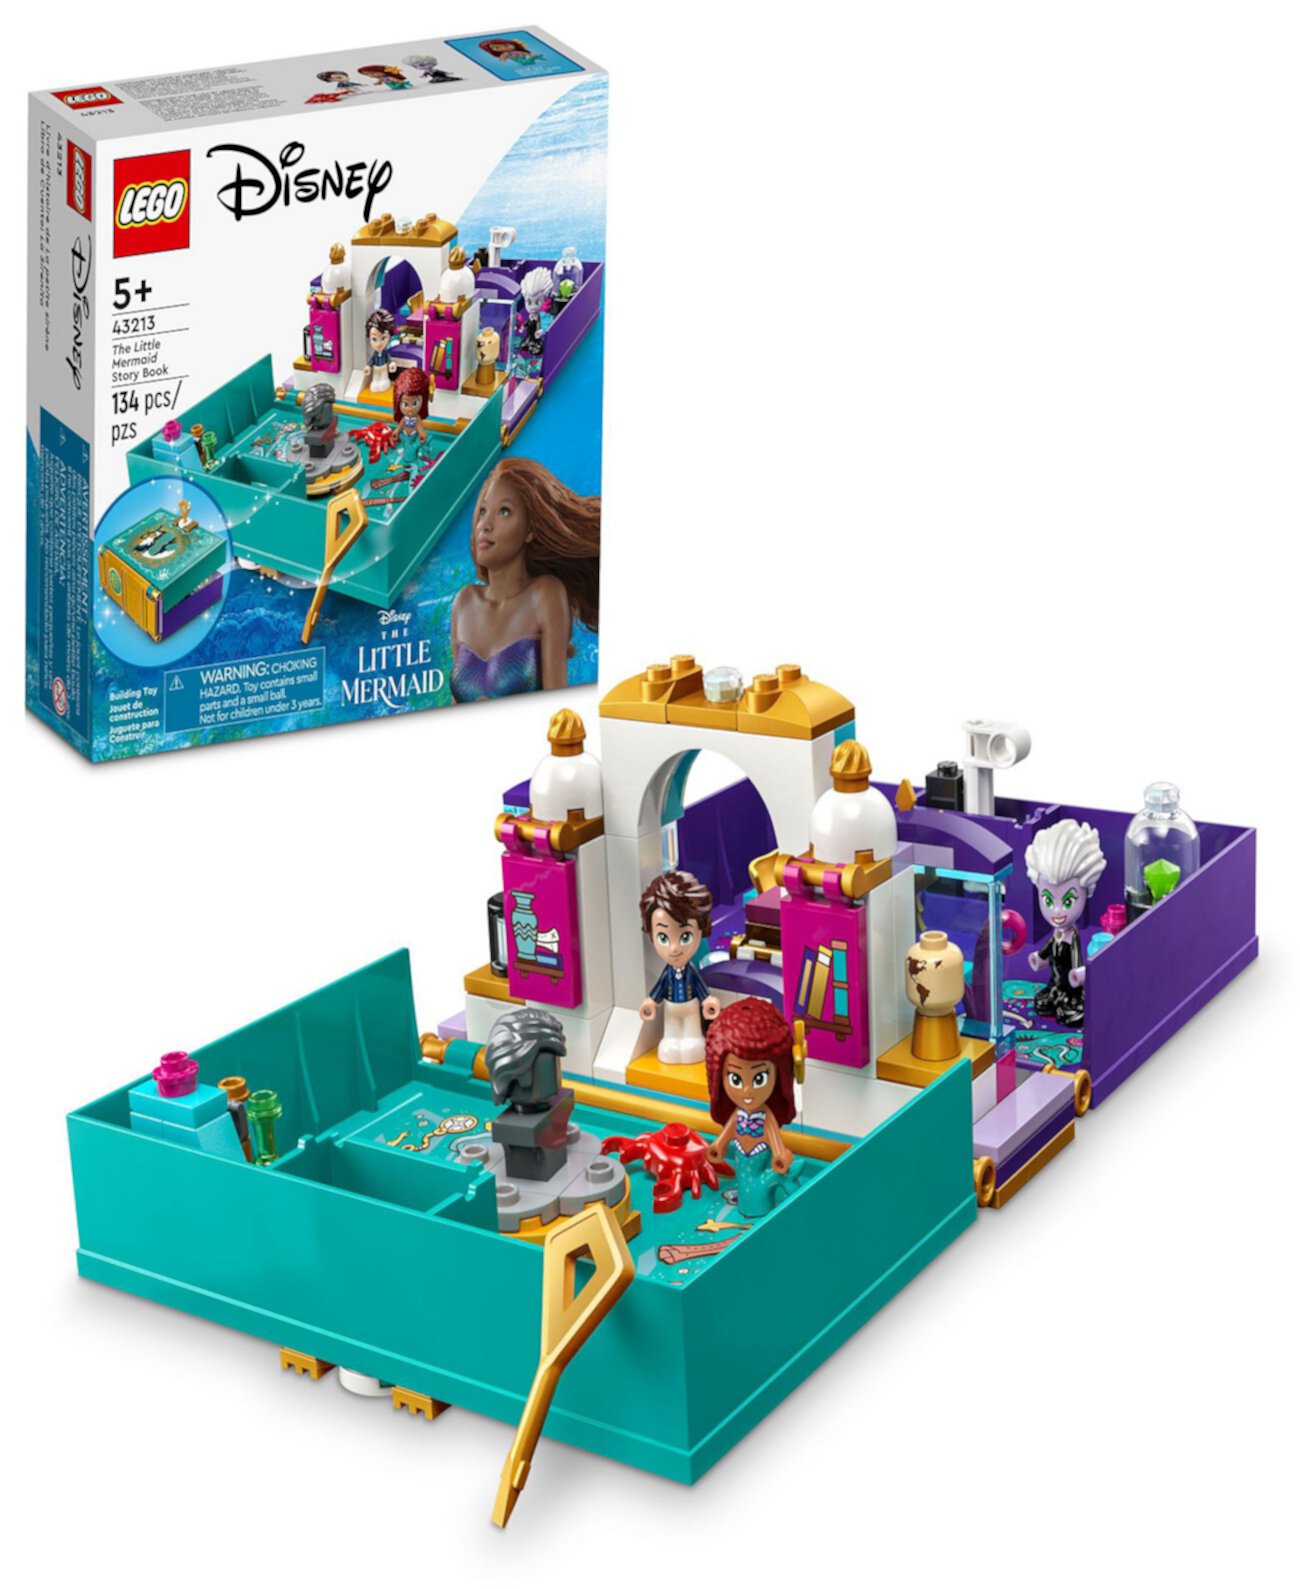 Disney 43213 Набор игрушек «История принцессы Русалочки» с минифигурками Ариэль, принца Эрика, Урсулы и Себастьяна Lego